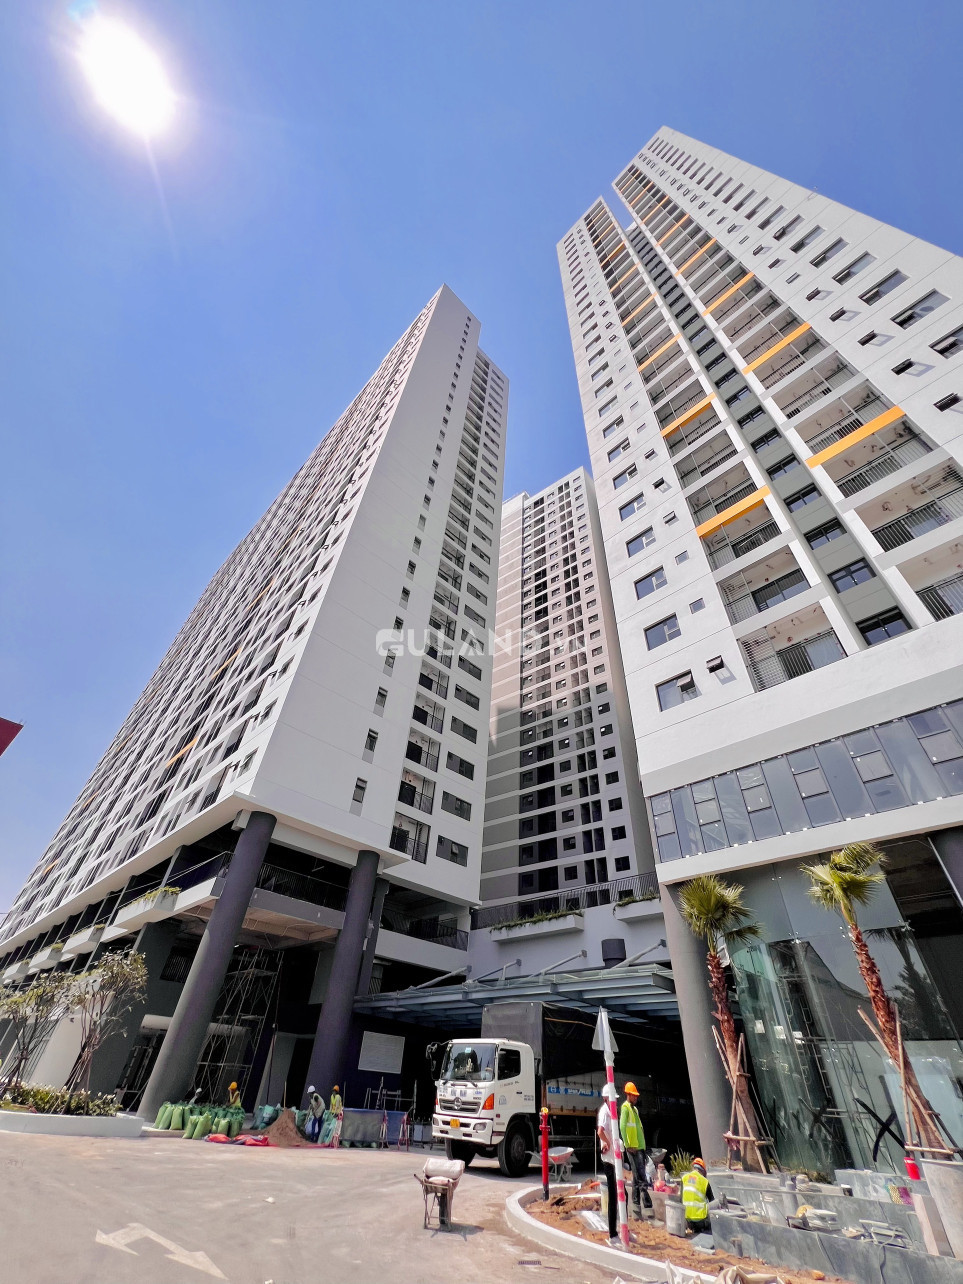 Mở bán căn hộ Legacy Thuận Giao Bình Dương giá thực 1.9 tỷ, ngân hàng hỗ trợ trả góp 80% trong 25 năm